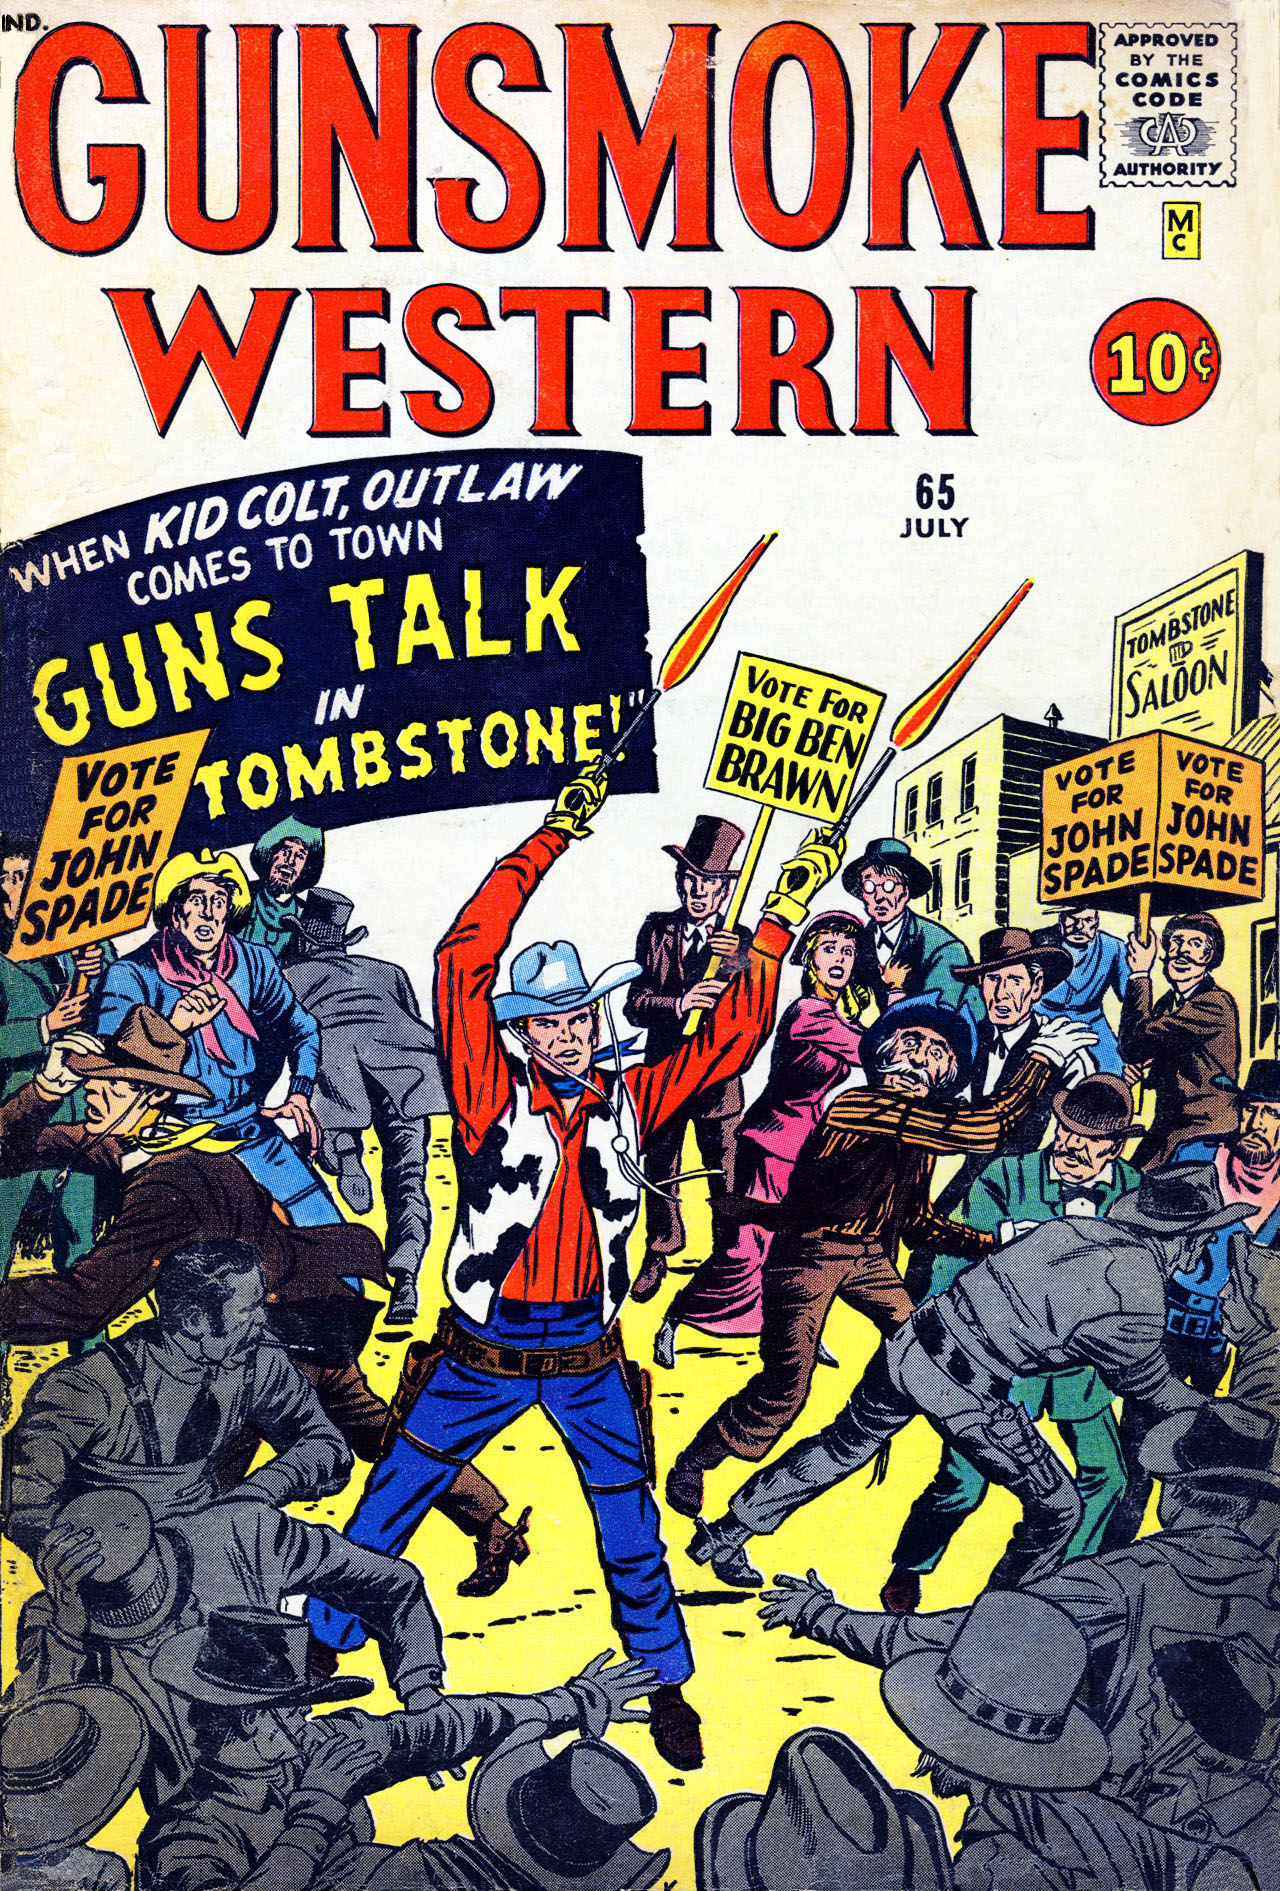 Read online Gunsmoke Western comic -  Issue #65 - 1